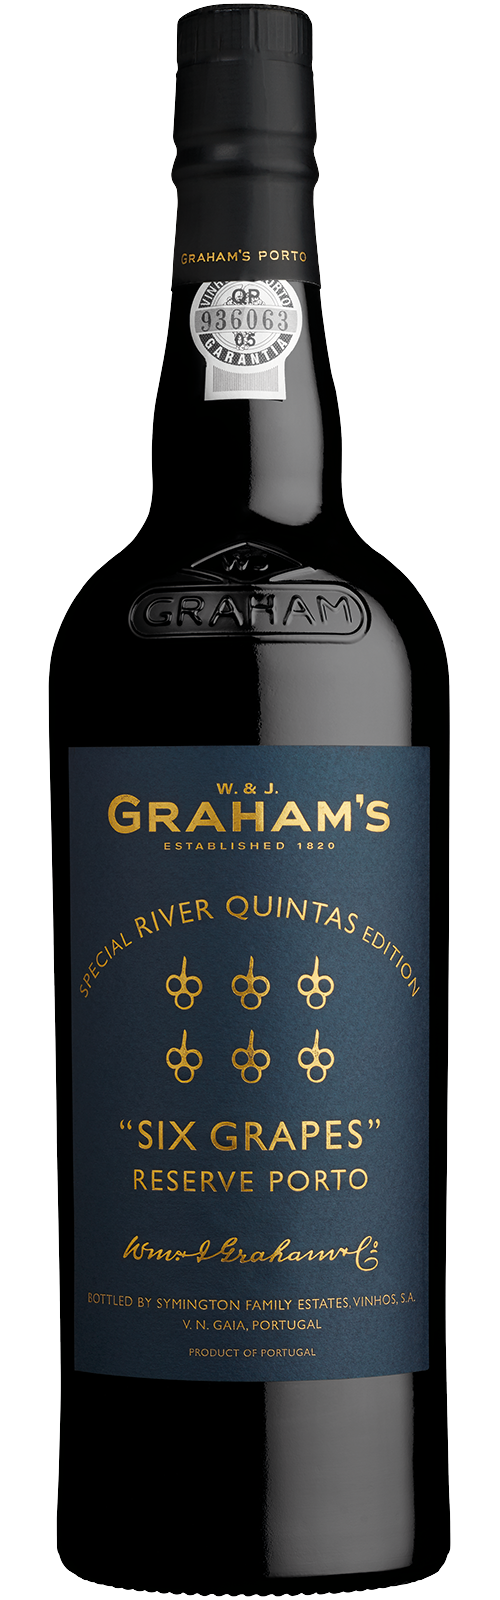 Graham's Six Grapes Reserve Port 'River Quintas', Oporto